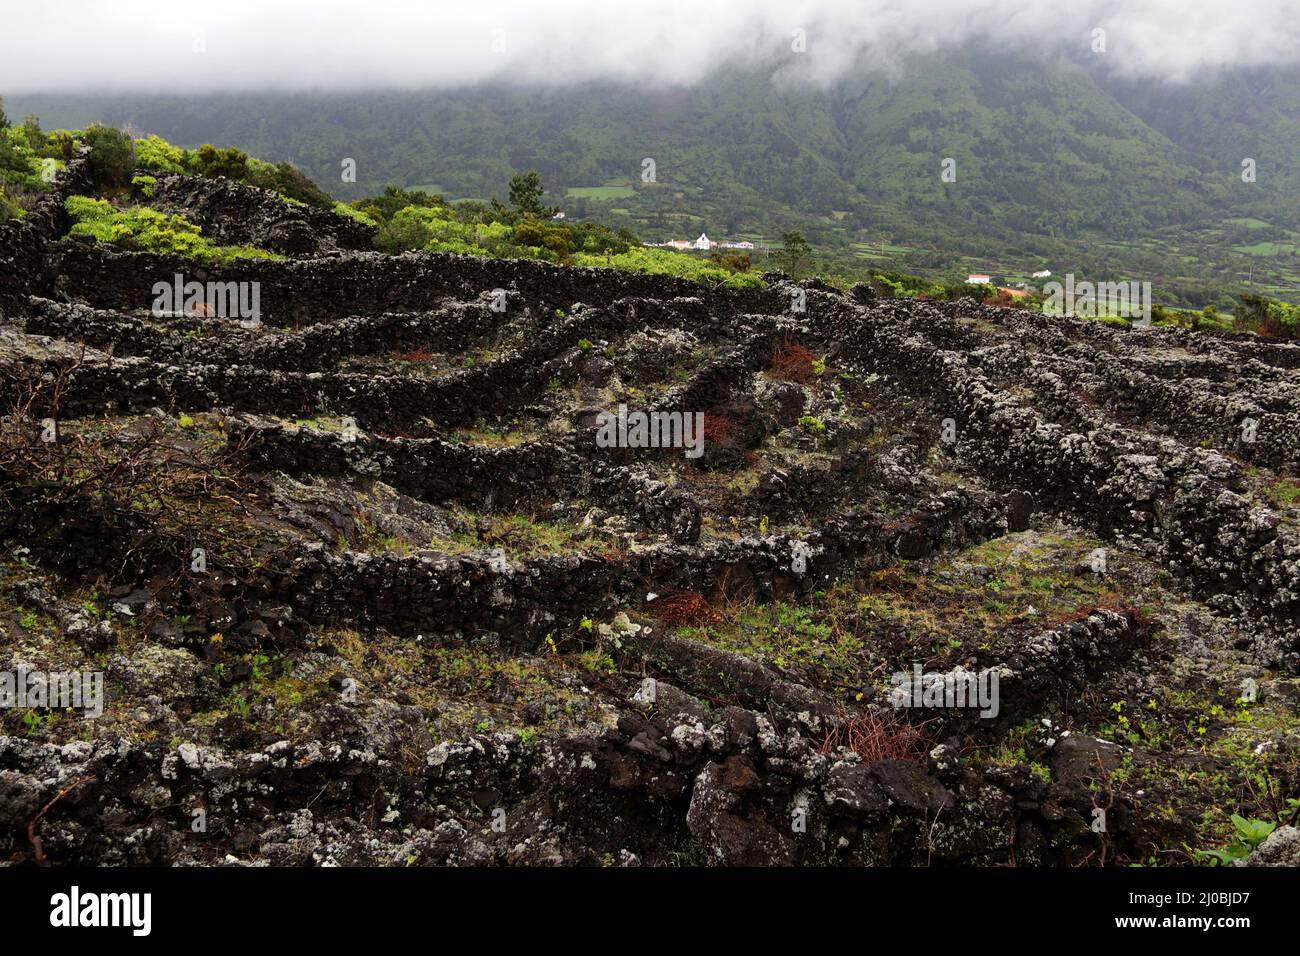 Pico Island Vineyard Culture, Patrimonio de la Humanidad, Azores Foto de stock